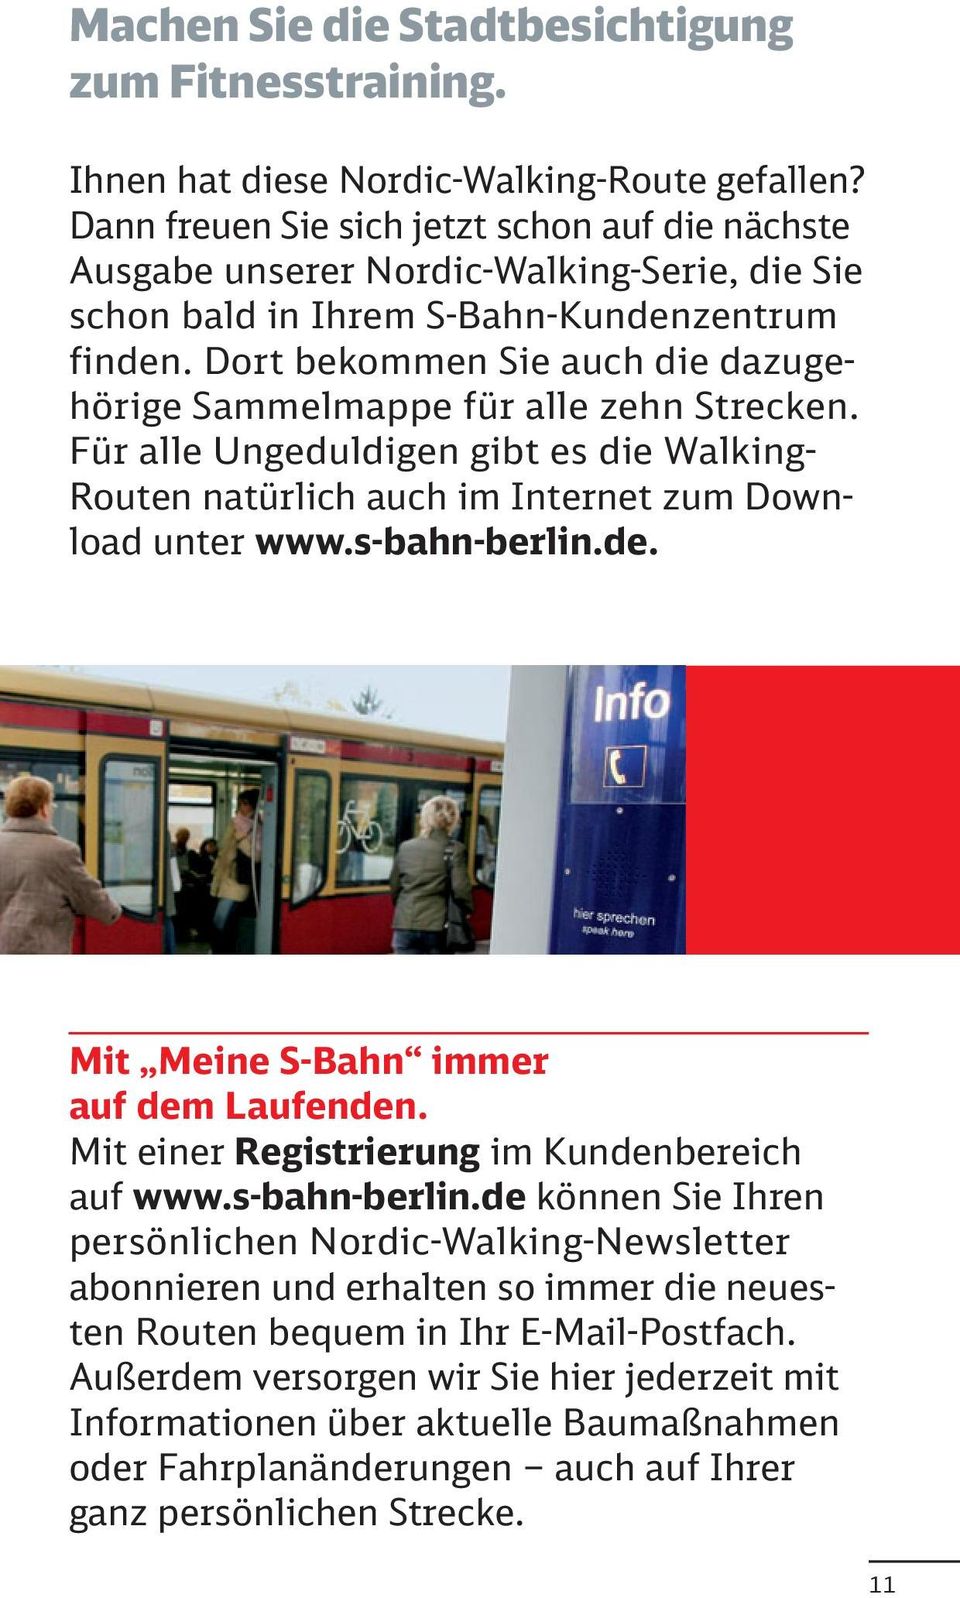 Dort bekommen Sie auch die dazugehörige Sammelmappe für alle zehn Strecken. Für alle Ungeduldigen gibt es die Walking- Routen natürlich auch im Internet zum Download unter www.s-bahn-berlin.de.